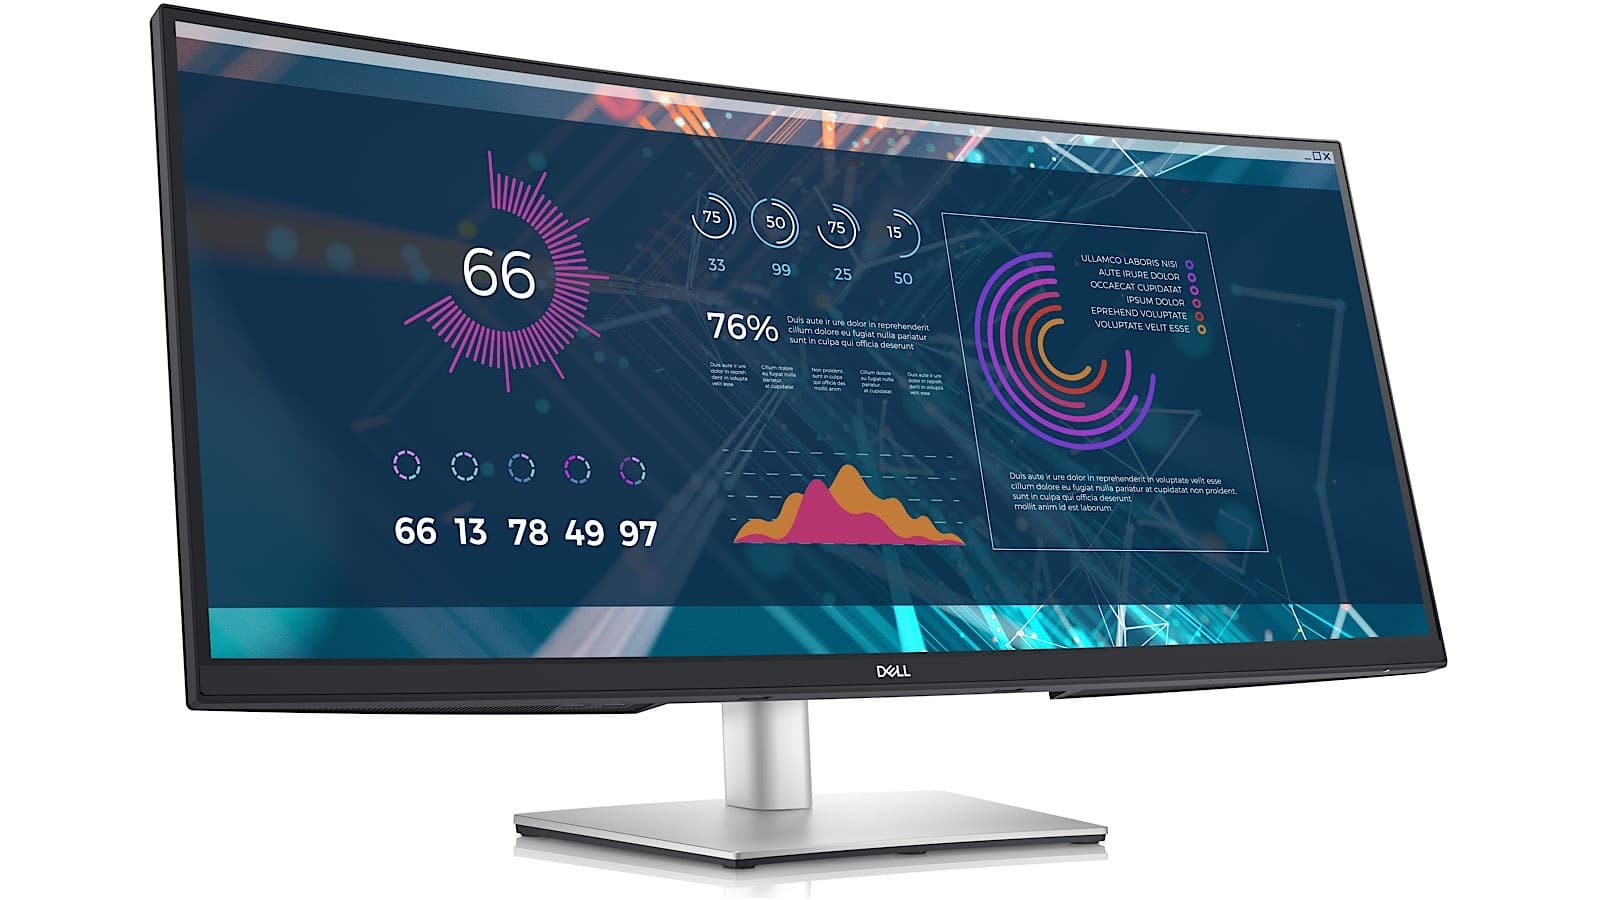 Dell 34 inch ultra-wide monitor